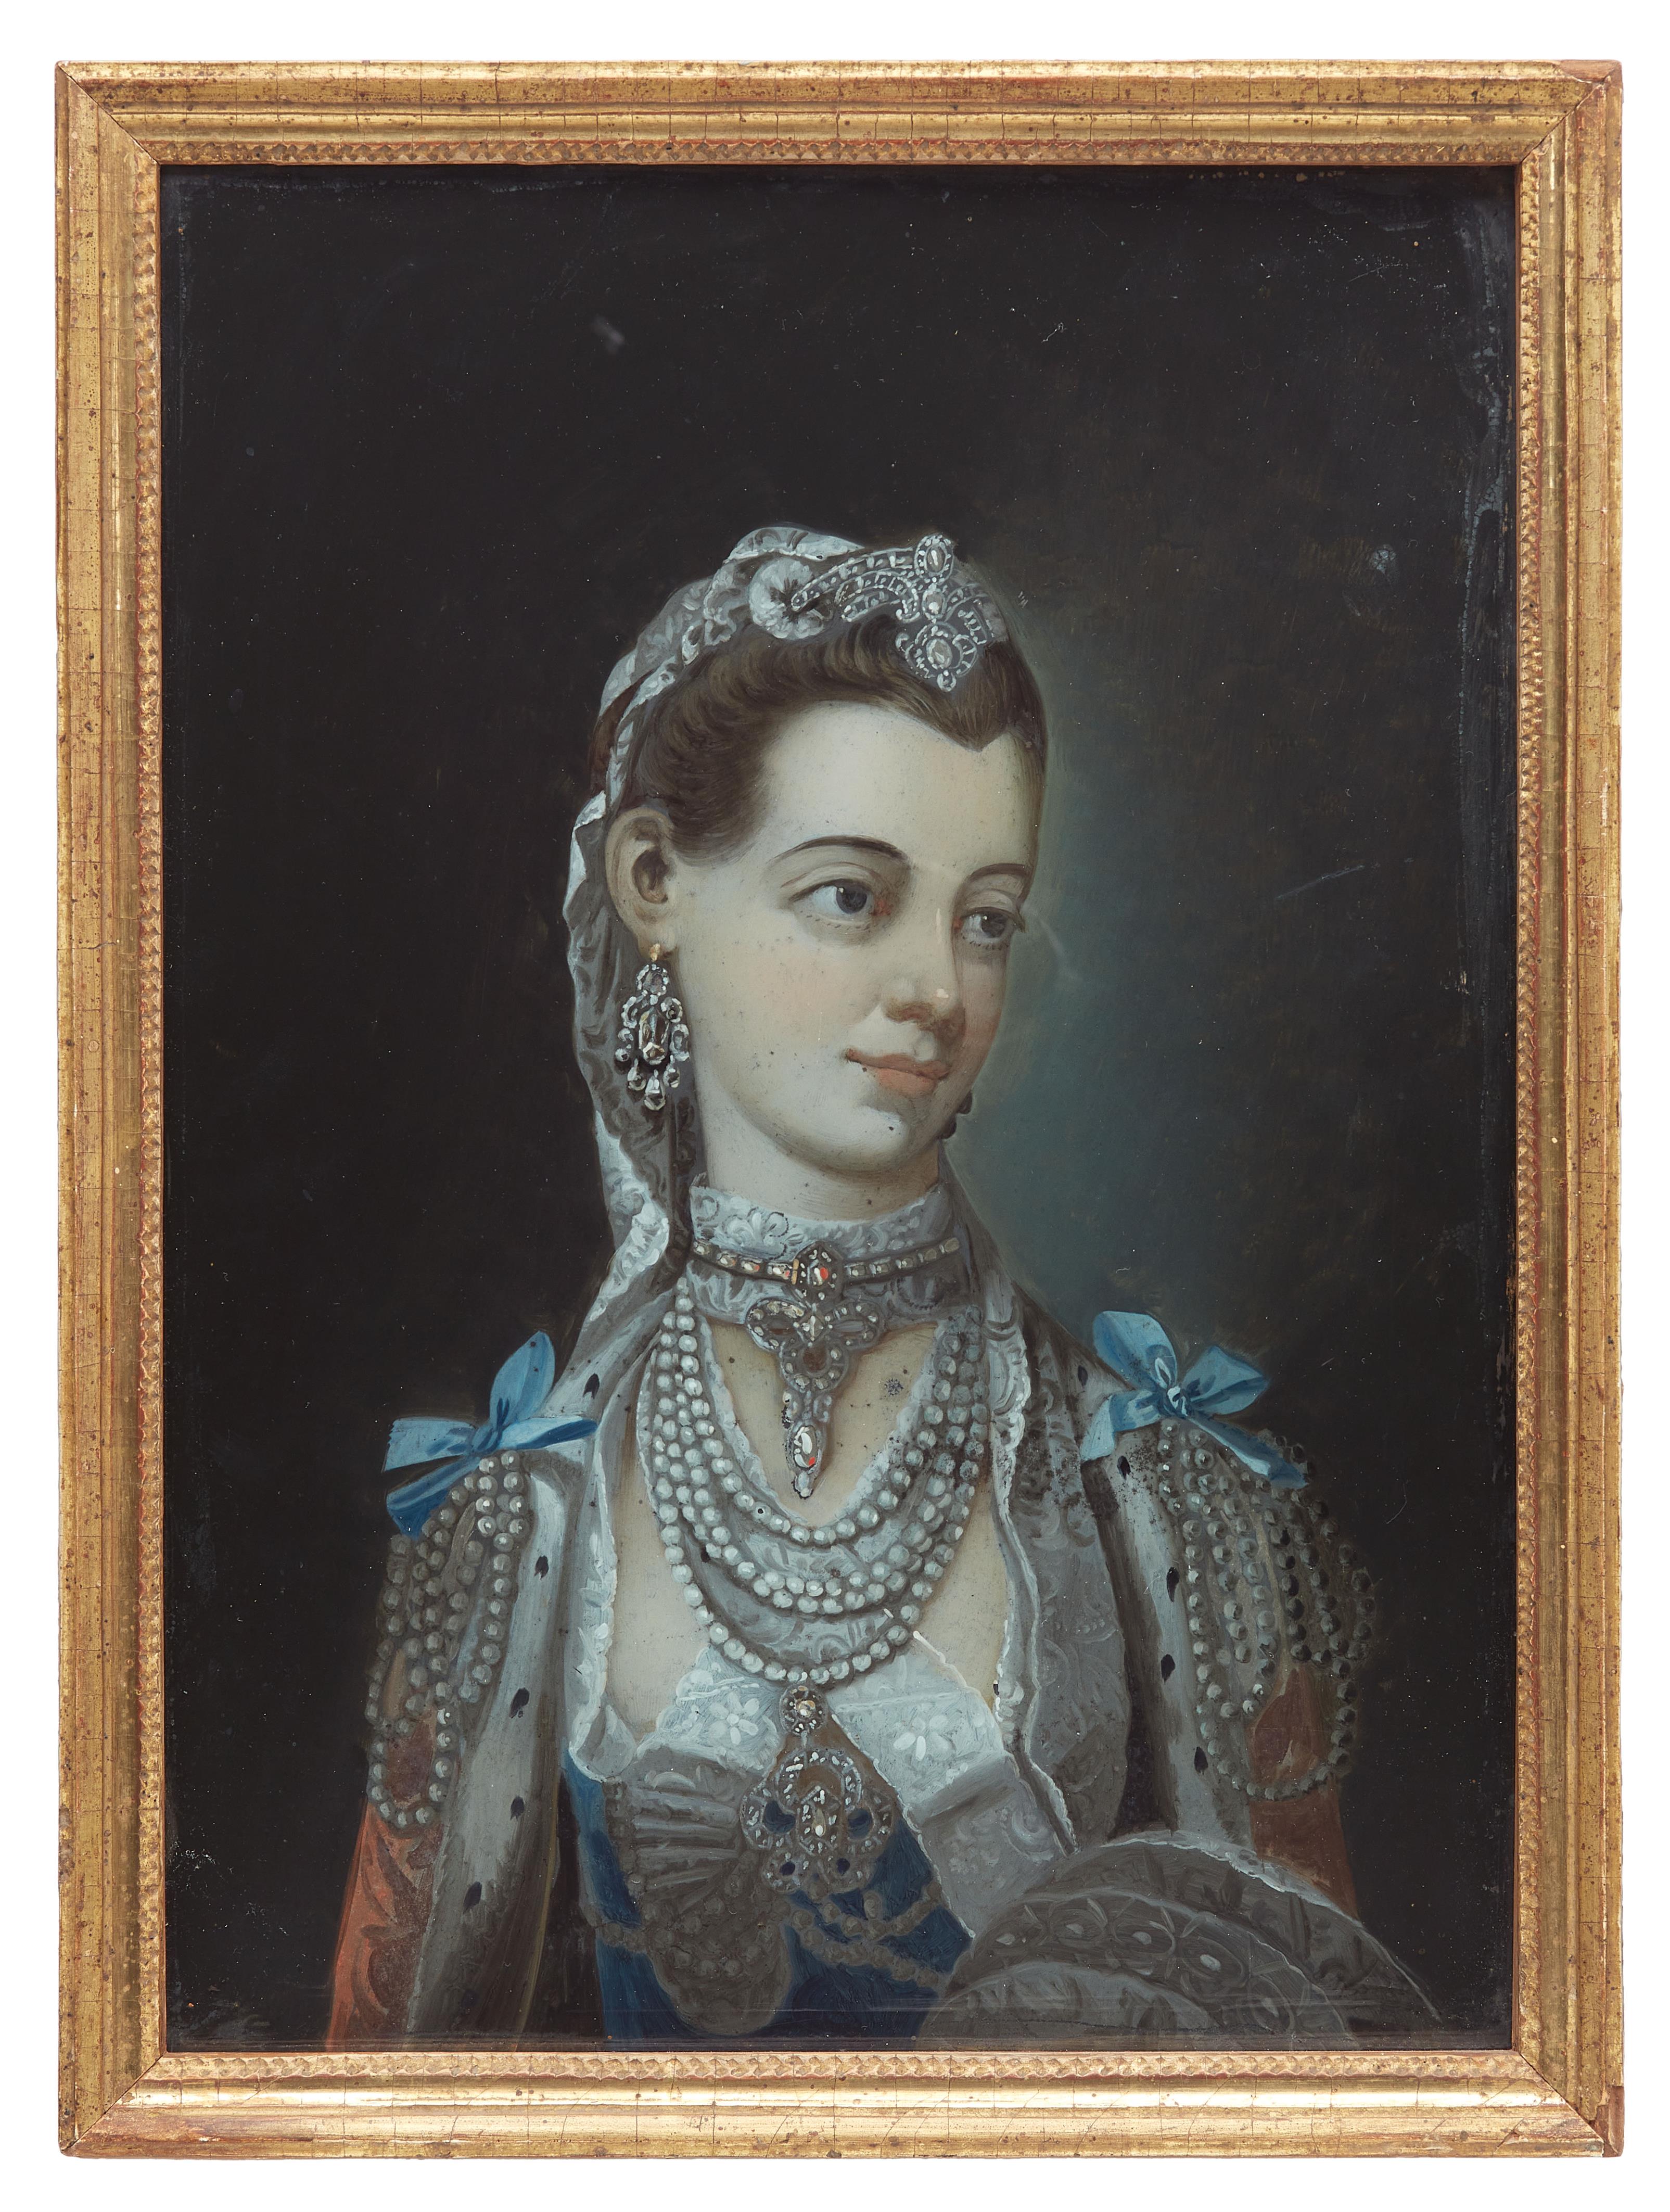 Königin Charlotte von Großbritannien
(geborene Herzogin von Mecklenburg, 1744 - 1818)
China, Guangzhou/ Canton, für den englischen Markt, Ende 18. / frühes 19. Jh. - image-1